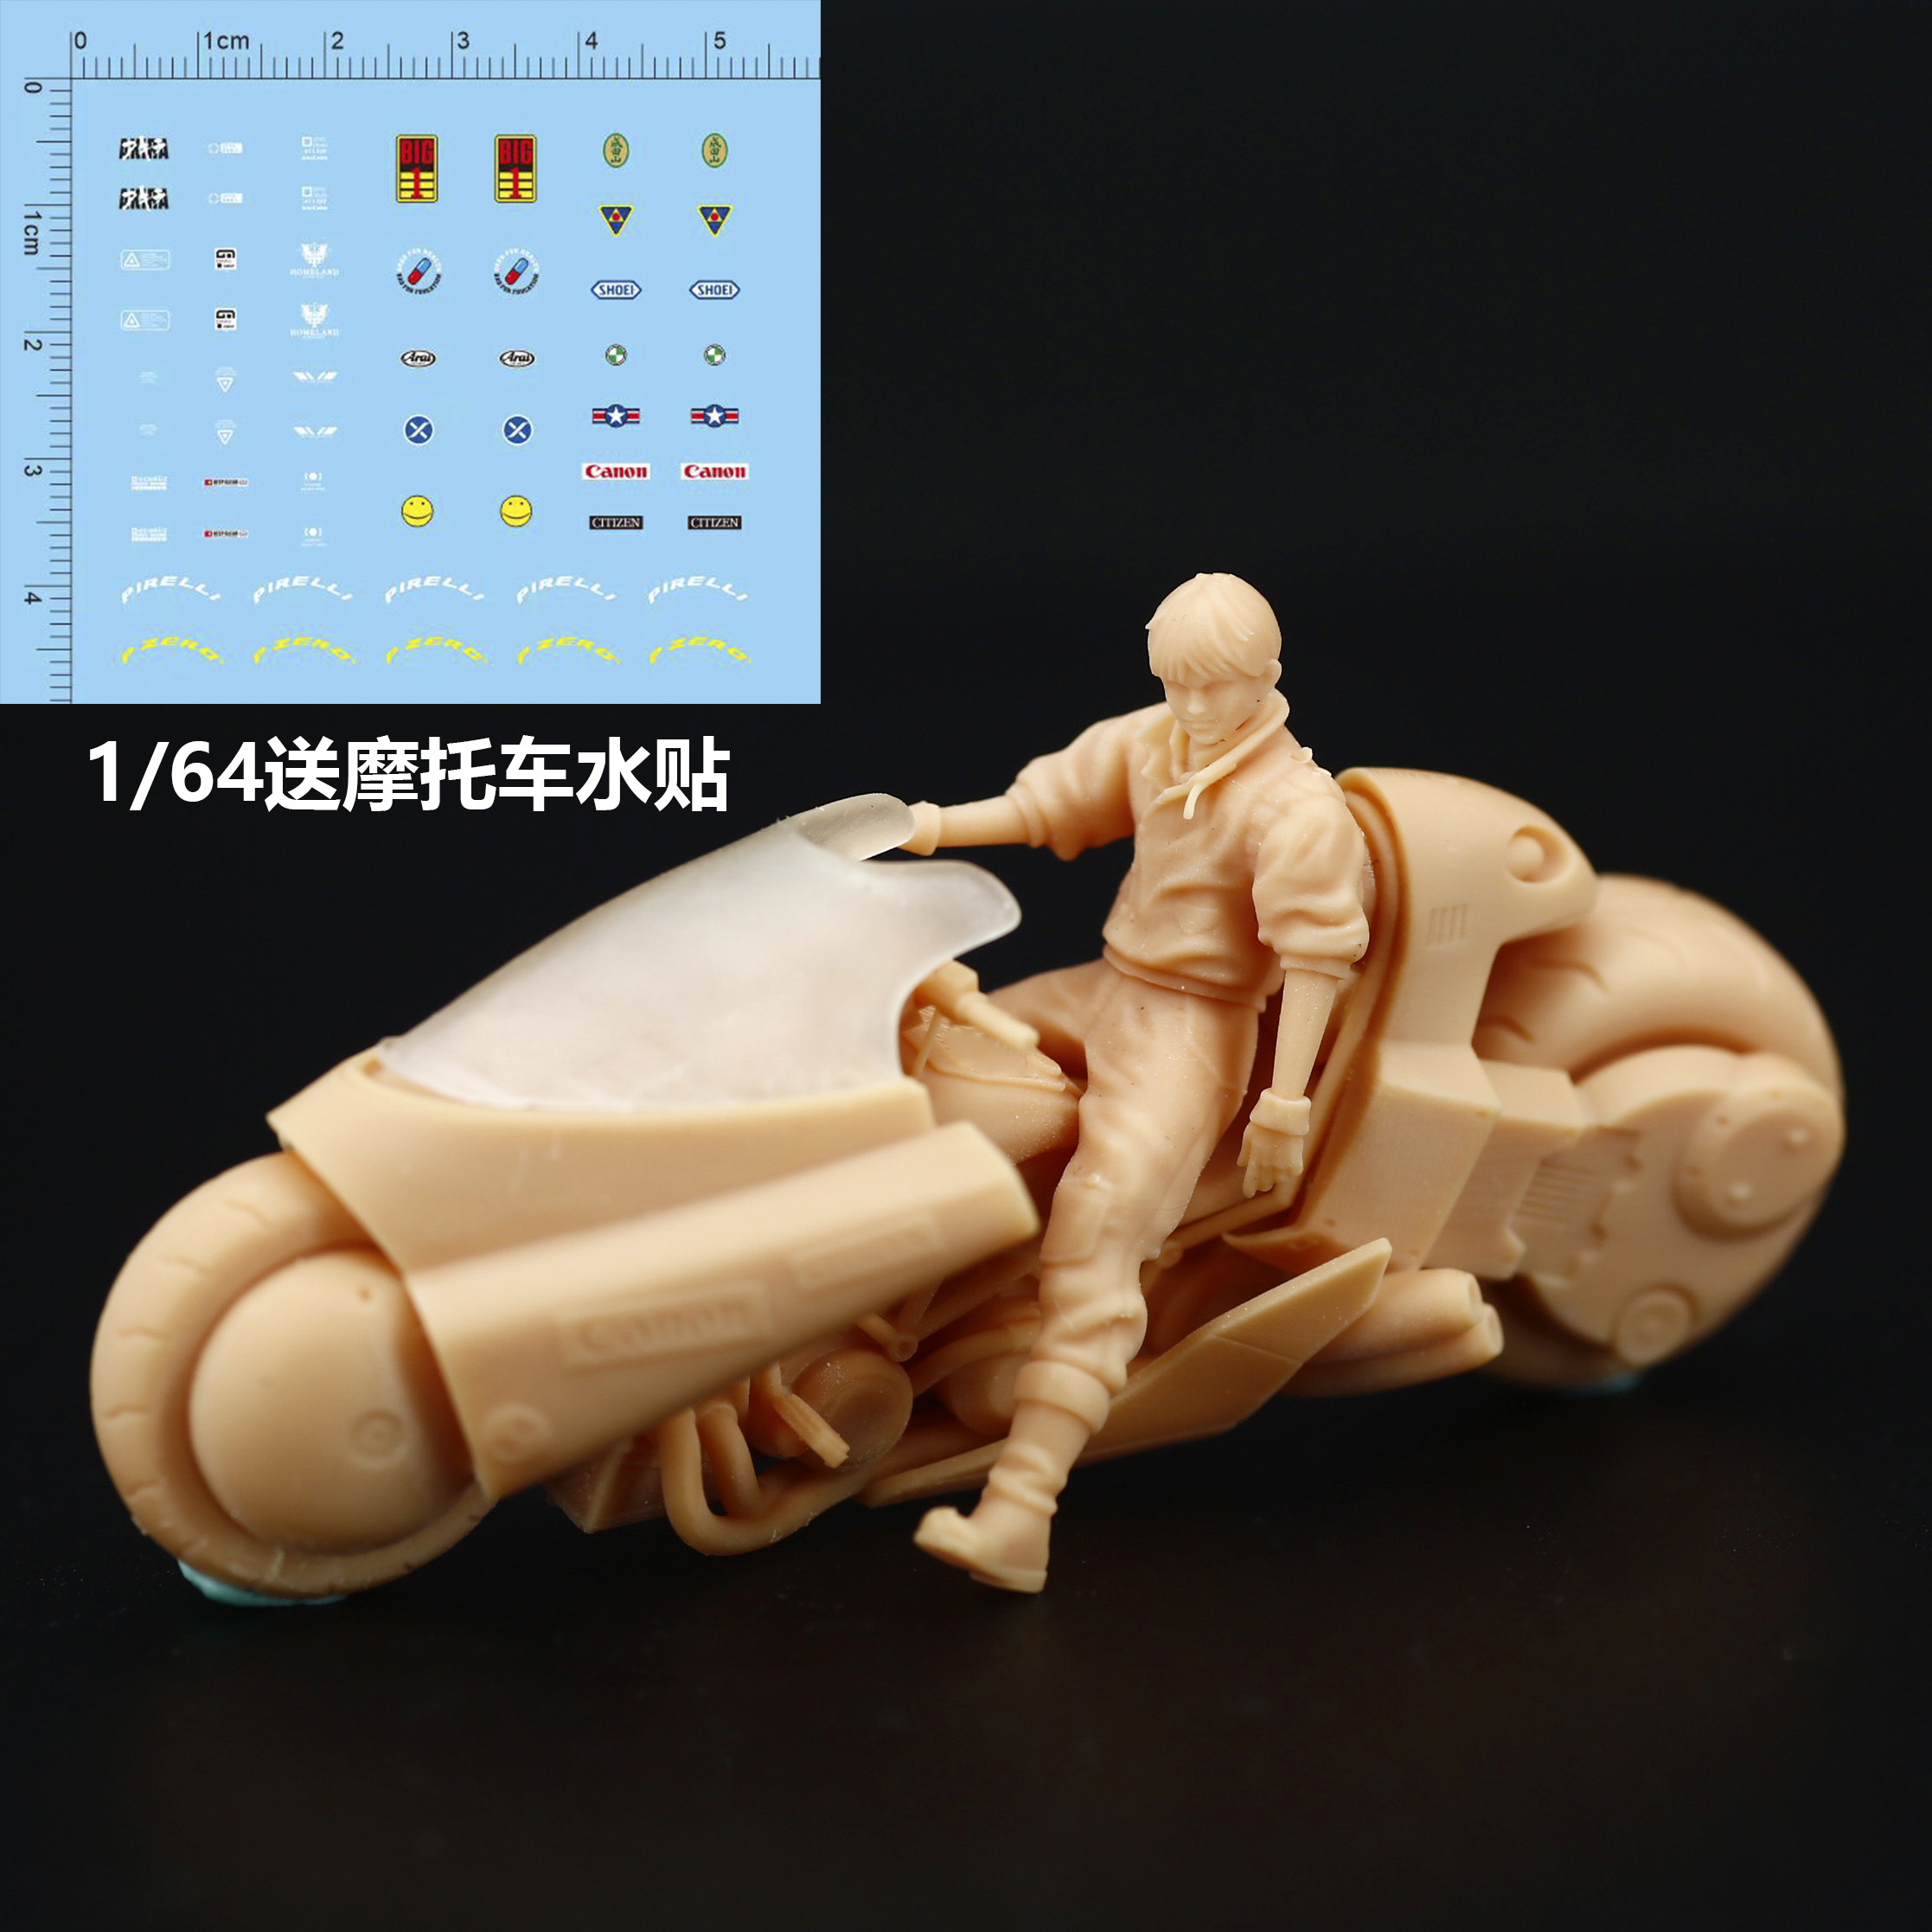 L062经典动漫阿基拉摩托车preiser模型1/64微缩创意景观沙盘小人